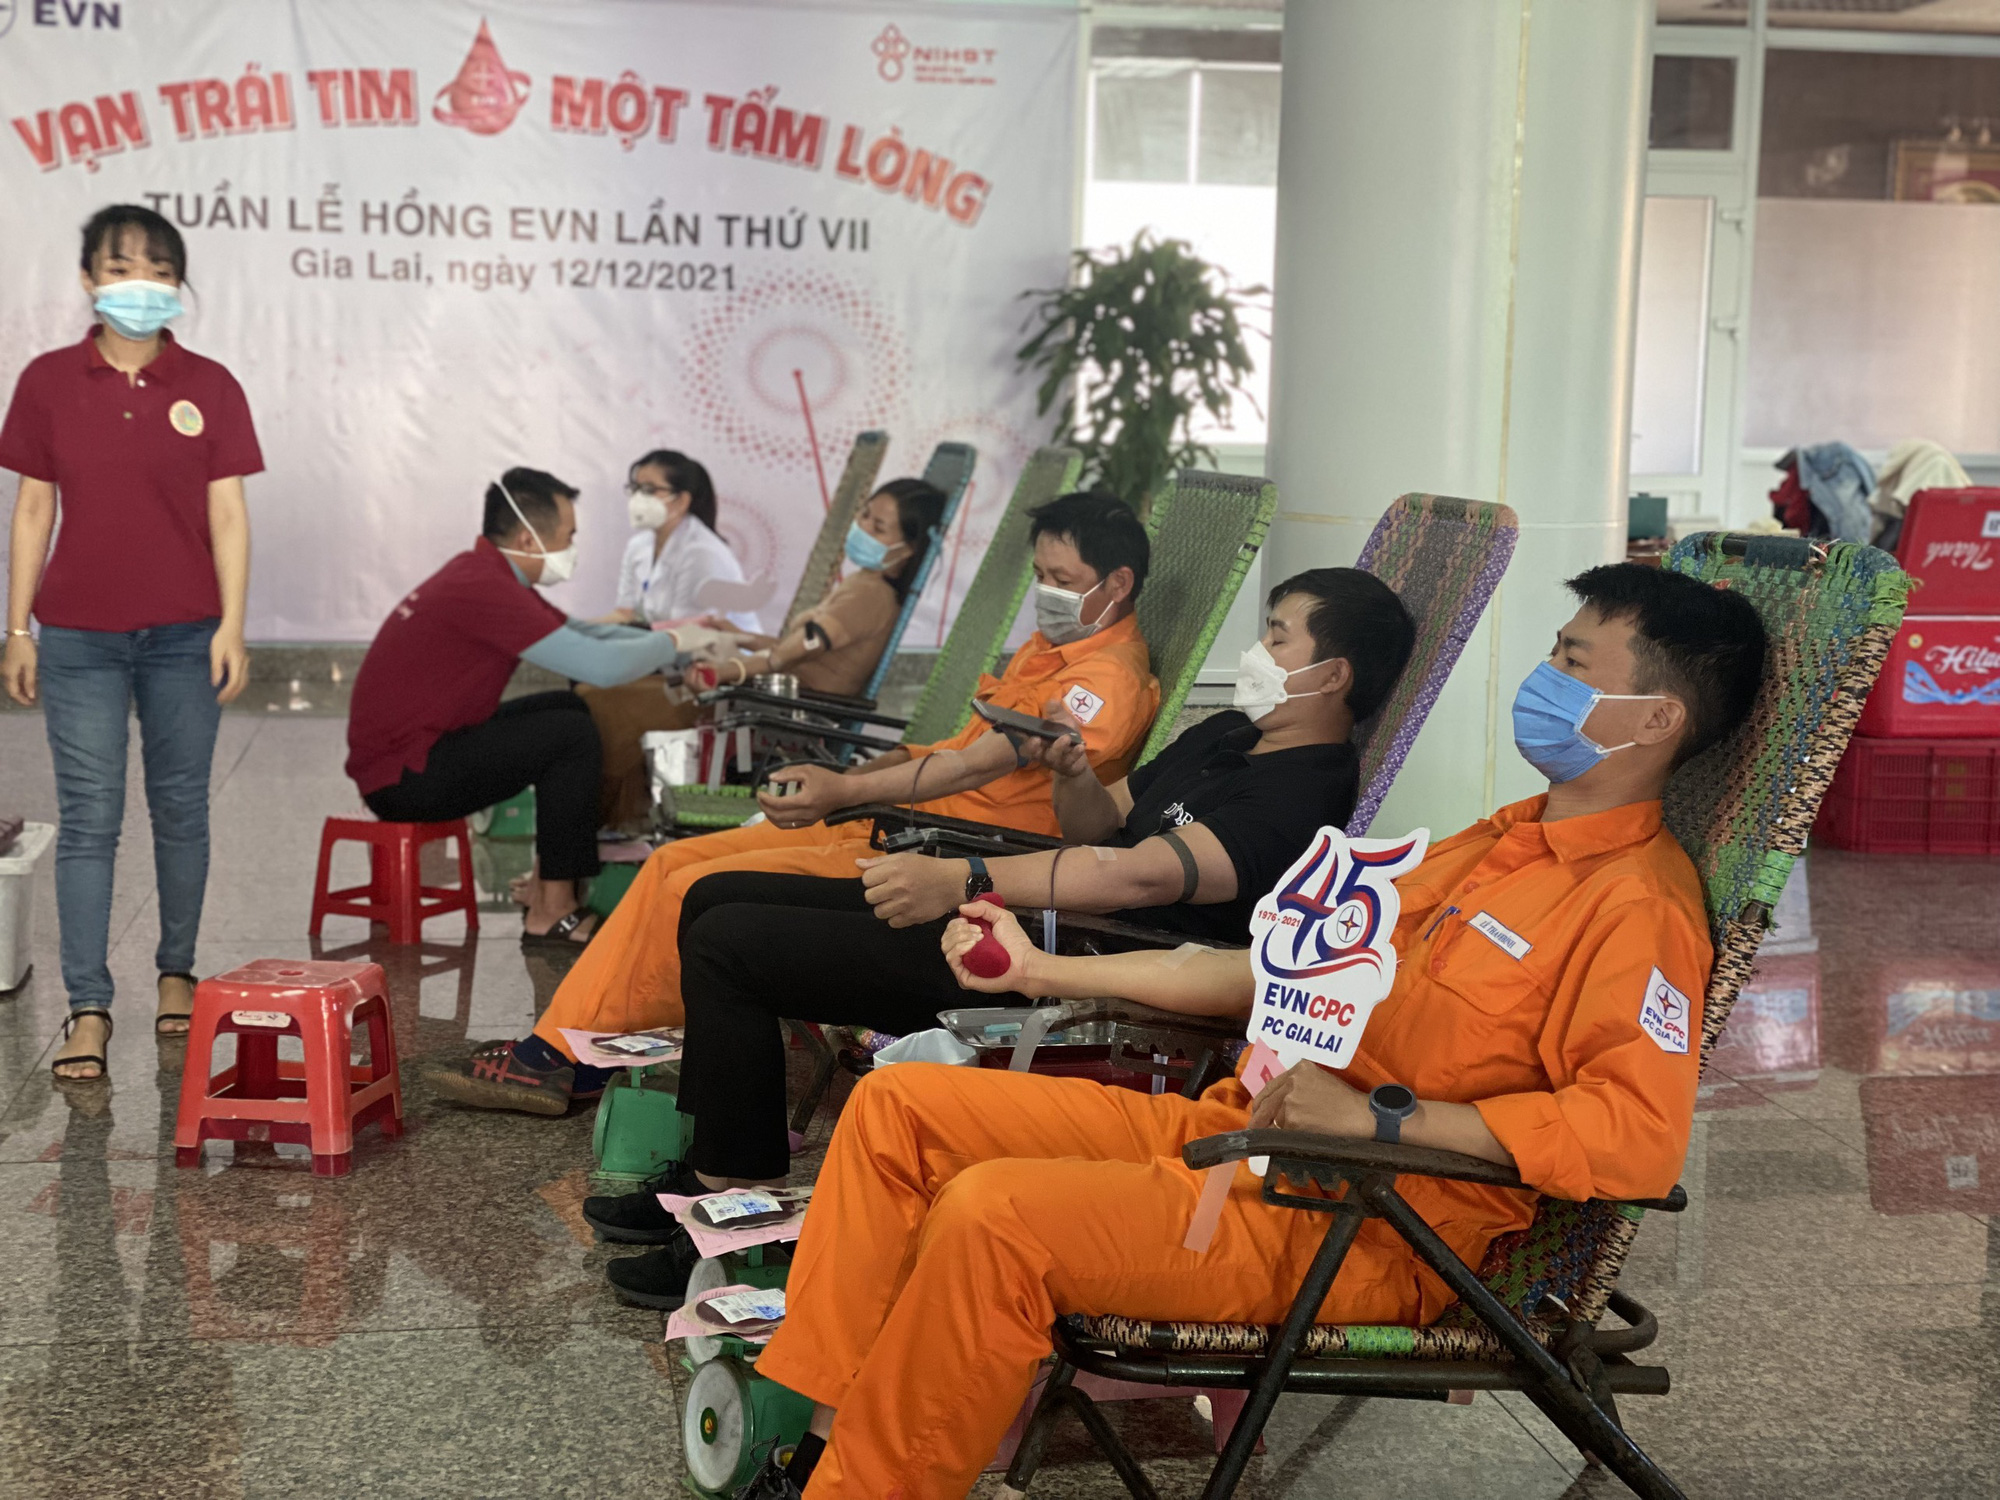 PC Gia Lai tổ chức hiến máu nhân đạo hưởng ứng &quot;Tuần lễ hồng EVN lần thứ VII&quot; - Ảnh 1.